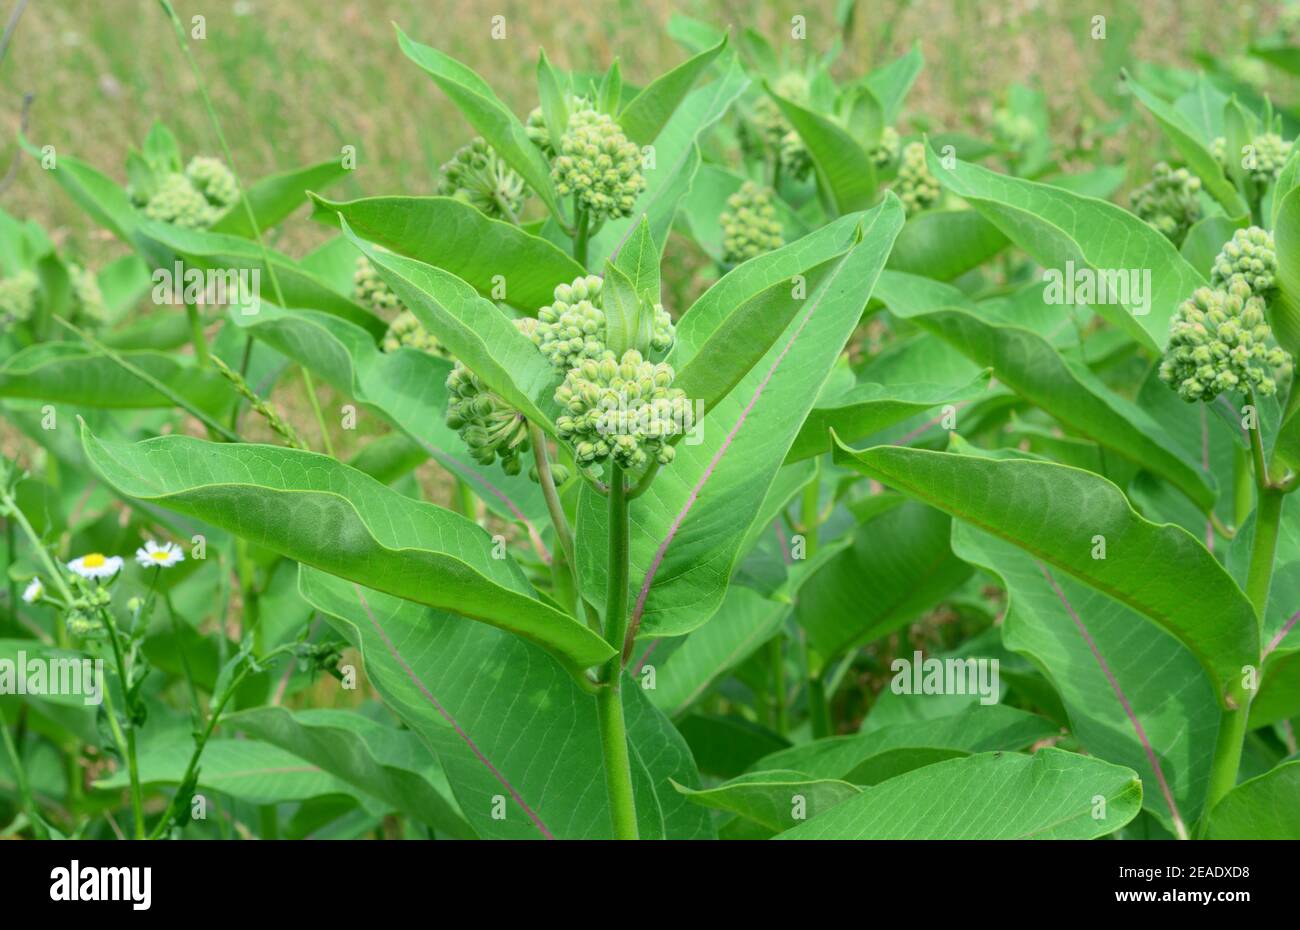 Asclepias syriaca oder gemeine Milchkrautpflanze ist eine gute Honigpflanze, aber eine invasive Art in Europa, da sie hohe Risiken für die einheimische Artenvielfalt birgt. Stockfoto